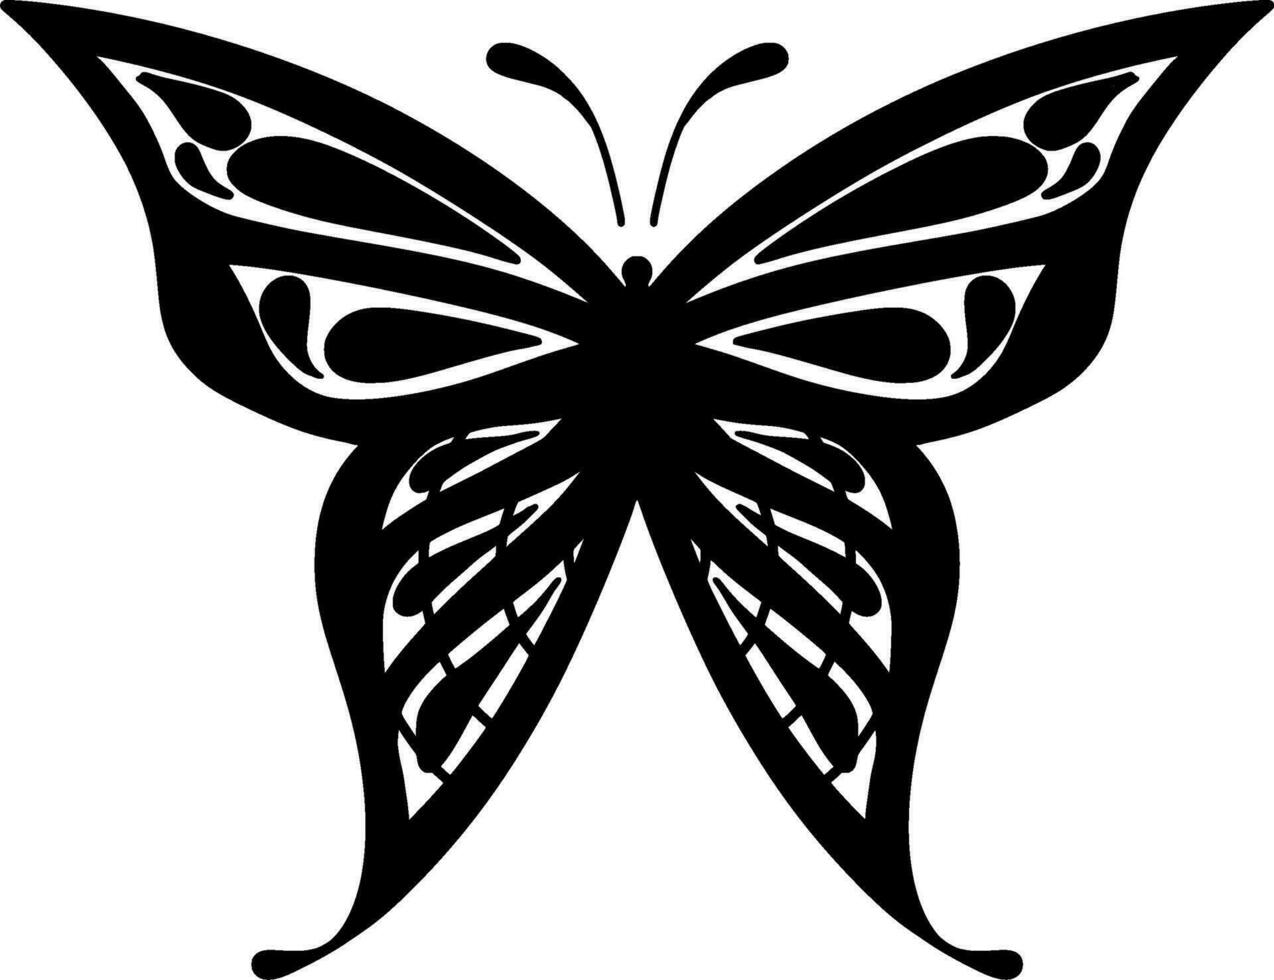 monocromo étnico mariposa diseño. anti estrés colorante página para adultos mano dibujado negro y blanco vector ilustración